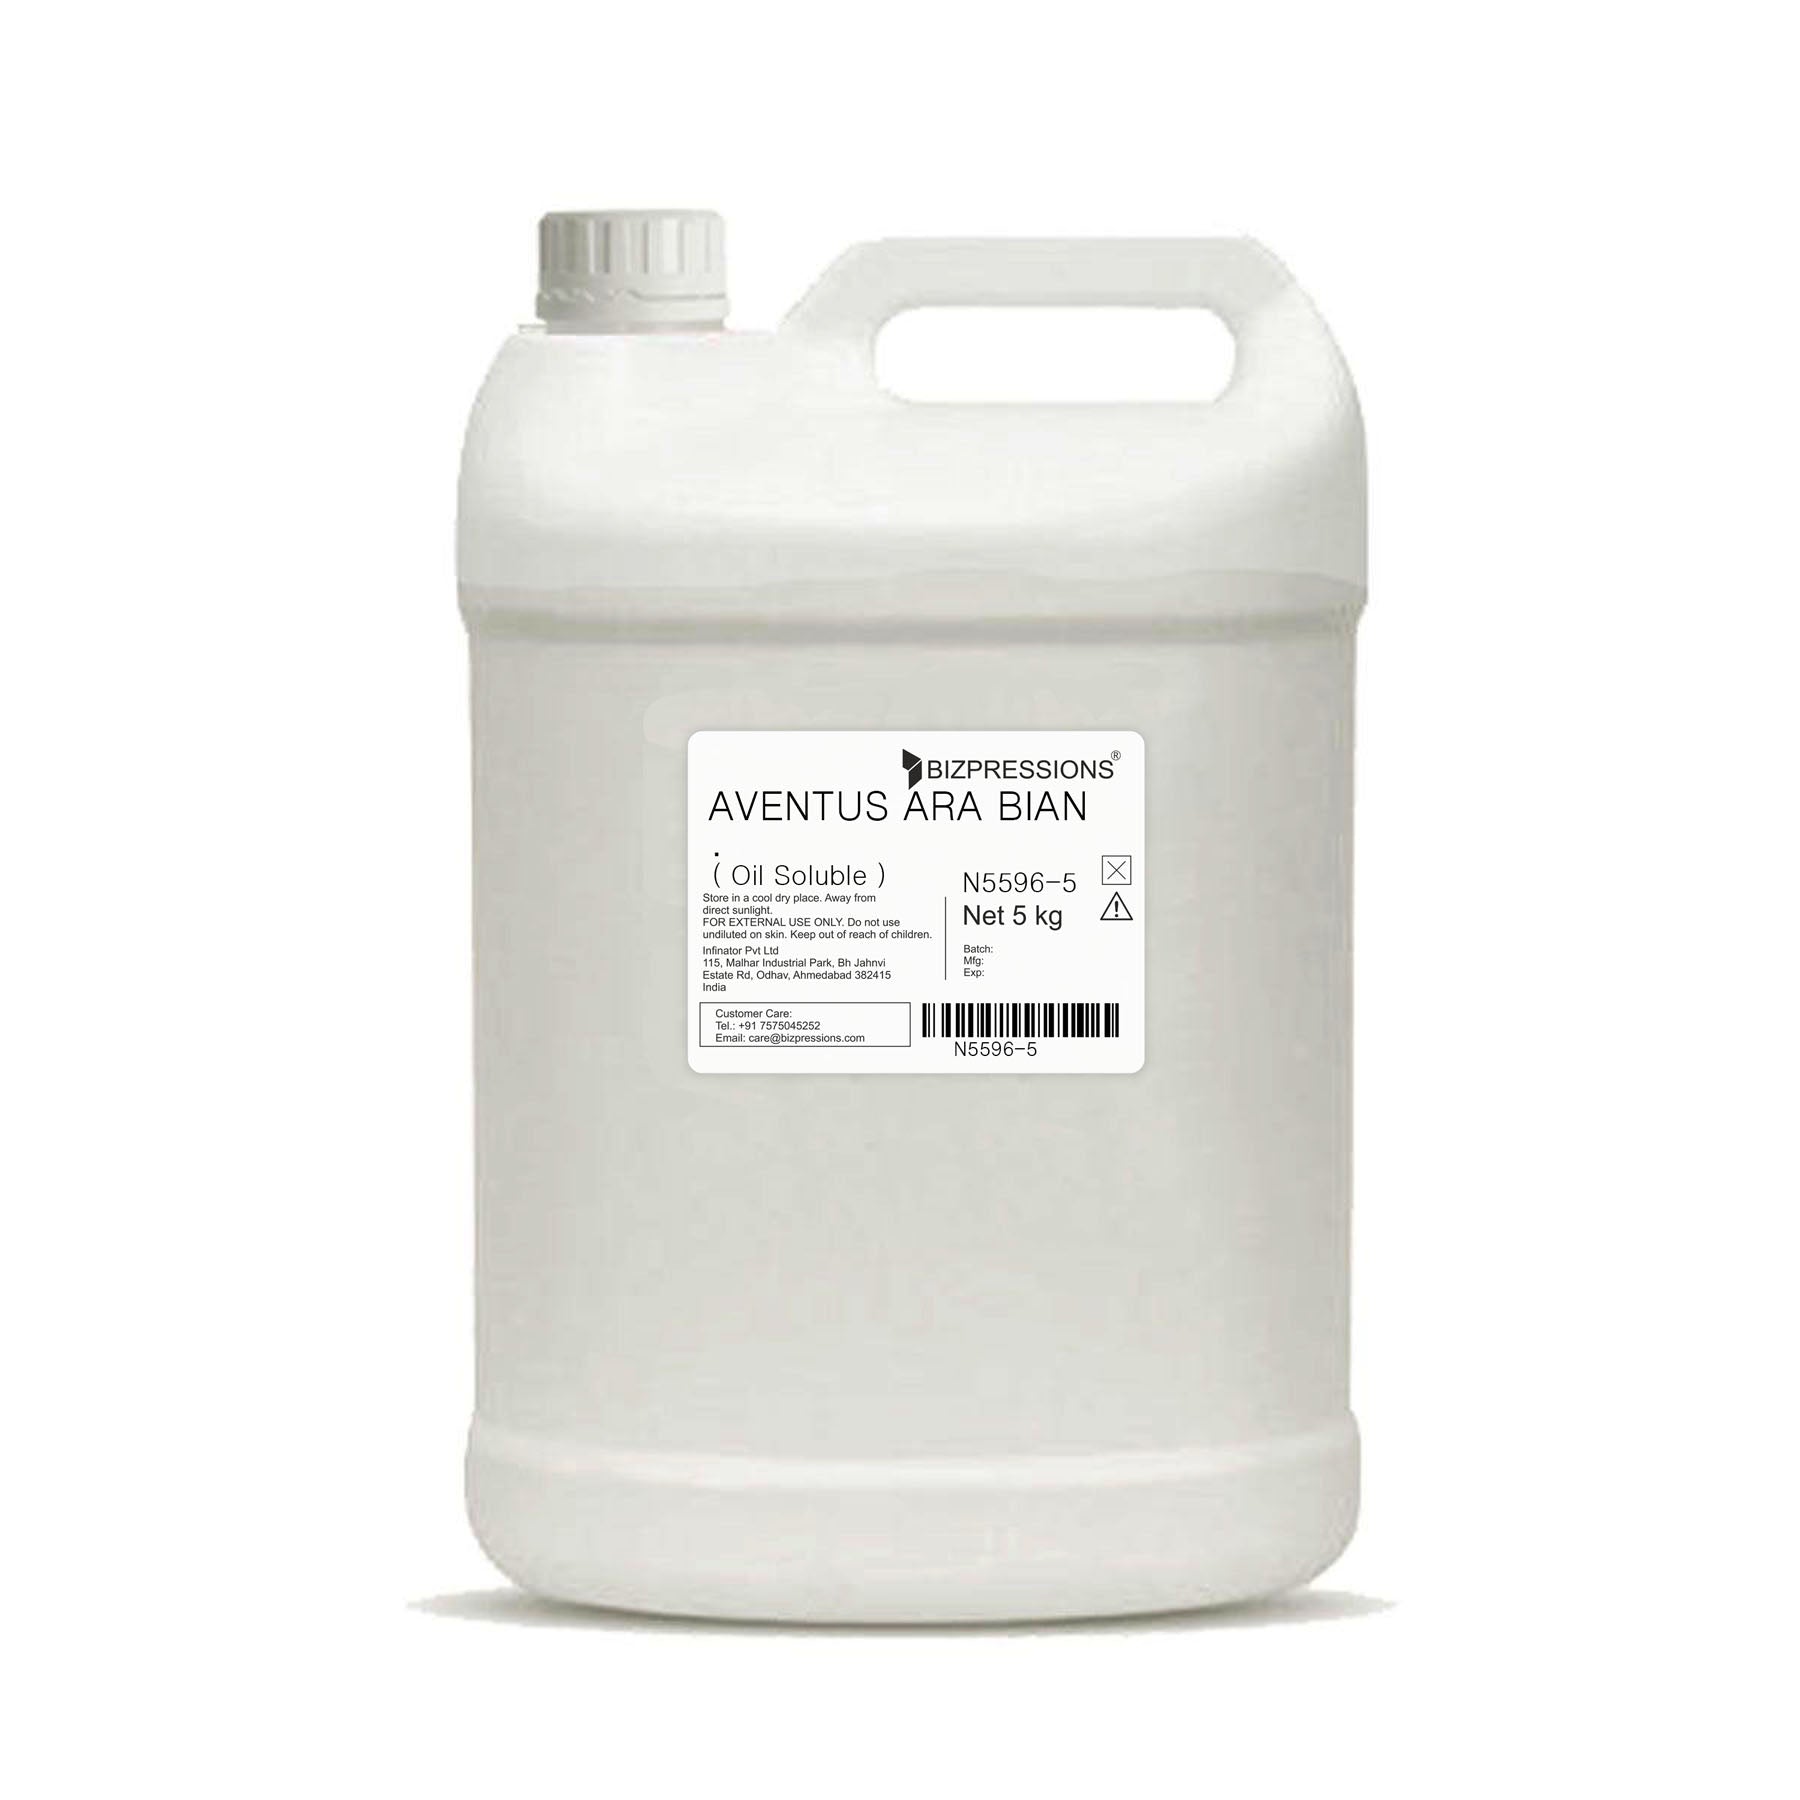 AVENTUS ARABIAN - Fragrance ( Oil Soluble ) - 5 kg